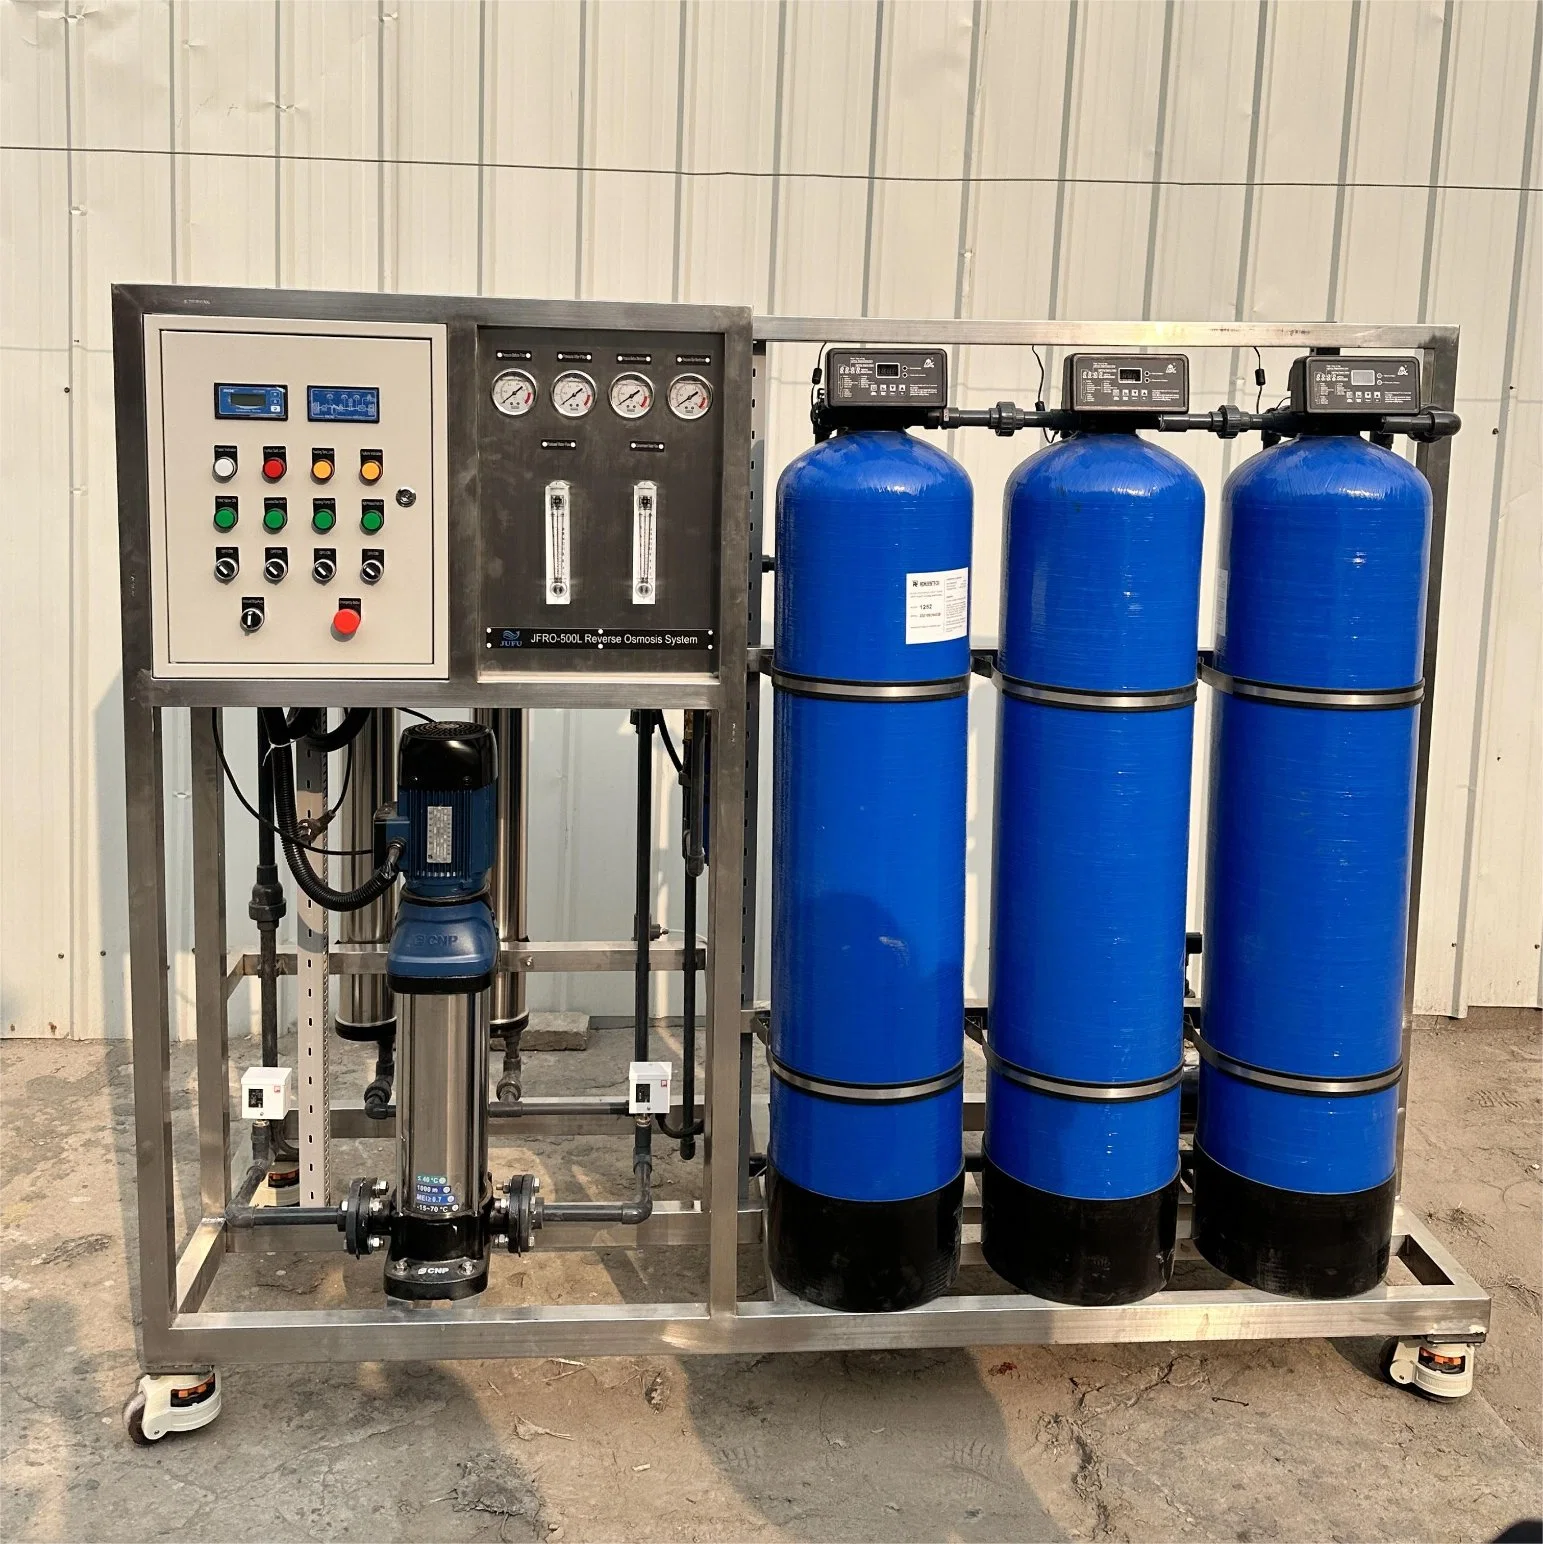 500 لتر/ساعة إعادة تعبئة المياه نظام المراقبة عن بُعد مياه المنشأة أجهزة العلاج